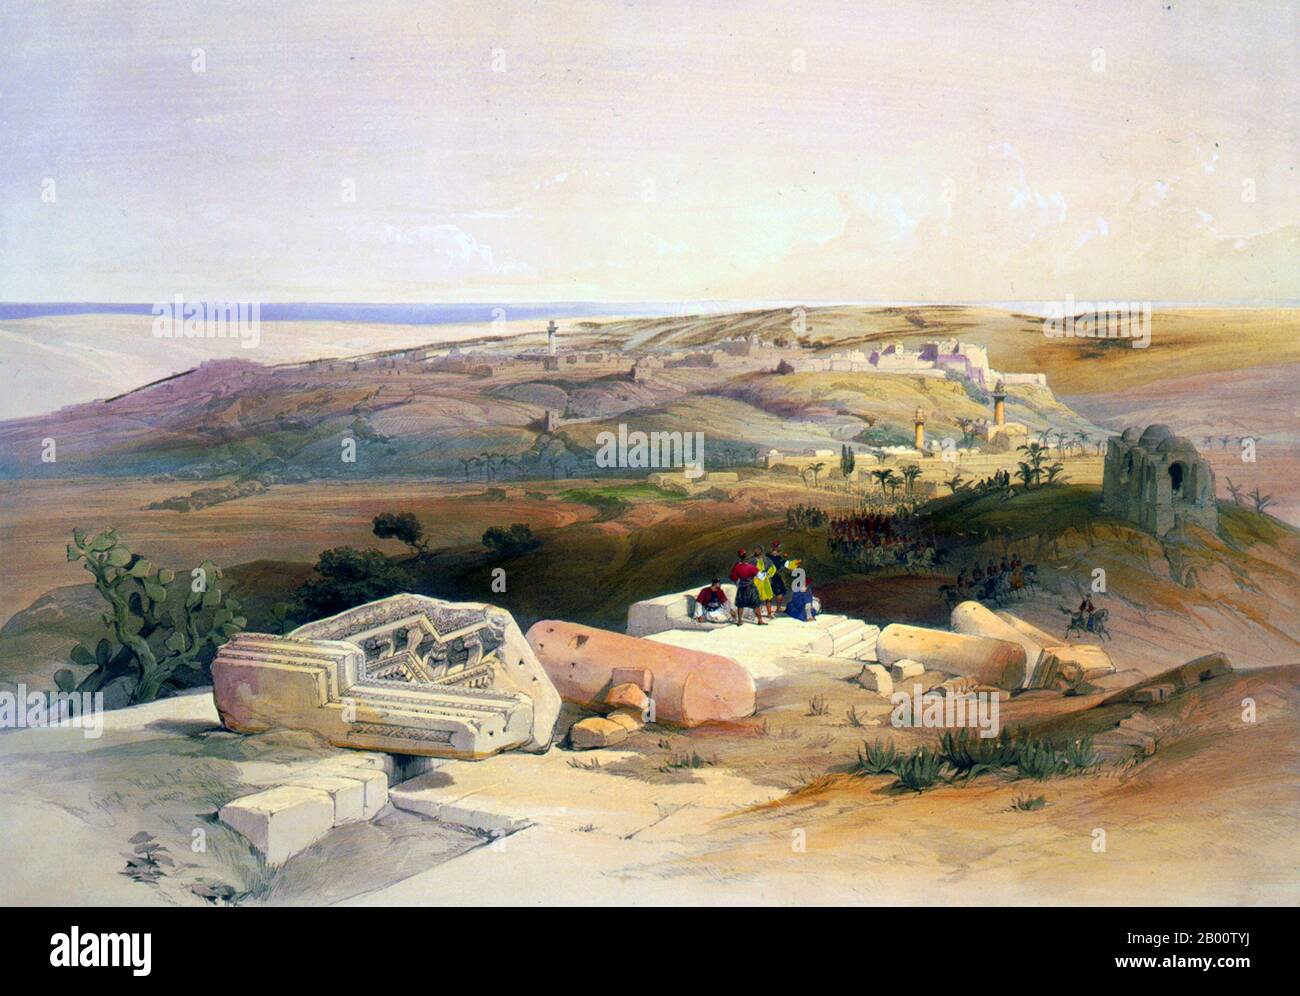 Palästina/Israel: "Ein Blick auf Gaza". Lithographie von David Roberts (1796-1864), c. 1840. David Roberts RA (1796-1864) war ein schottischer Maler. Er ist vor allem für eine fruchtbare Serie von detaillierten Drucken von Ägypten und dem Nahen Osten bekannt, die er in den 1840er Jahren aus Skizzen, die er während langer Touren durch die Region (1838–1840) machte, produzierte. Dieses Werk und seine großen Ölgemälde ähnlicher Motive machten ihn zu einem prominenten orientalistischen Maler. 1841 wurde er zum Royal Academician gewählt. Stockfoto